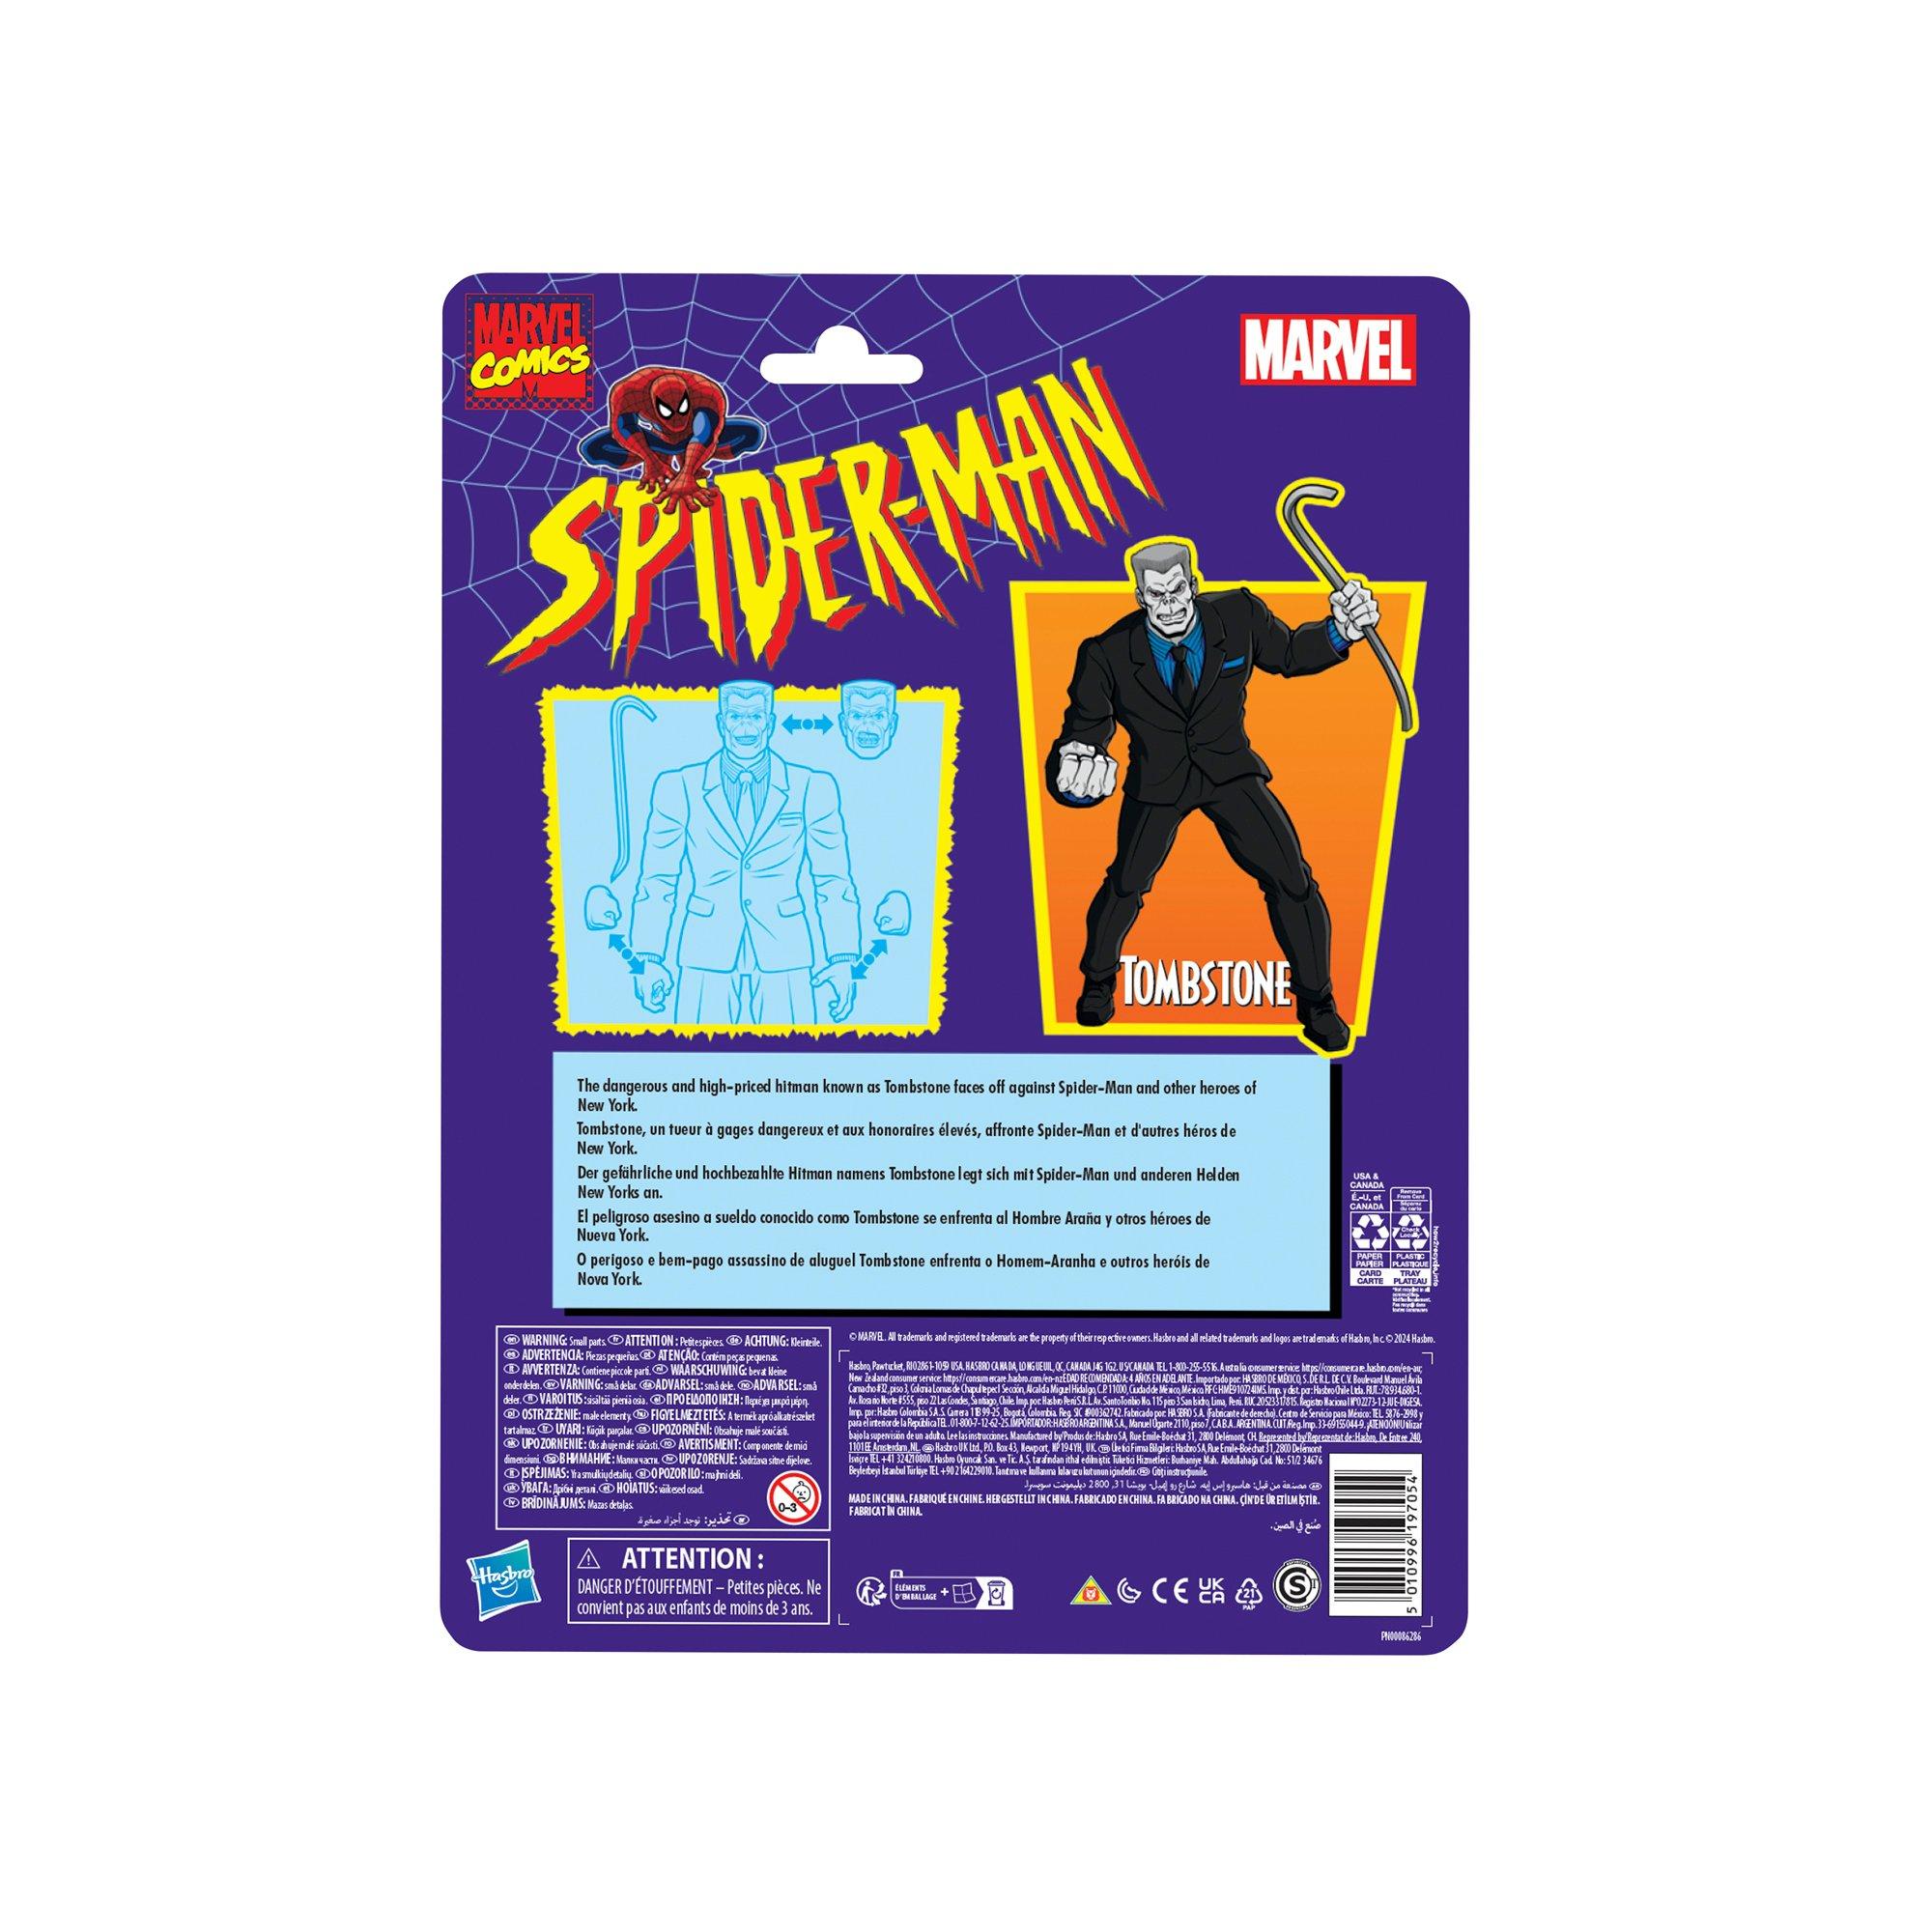 Spiderman Spidey 2 puzzles de 20 pièces pour enfant